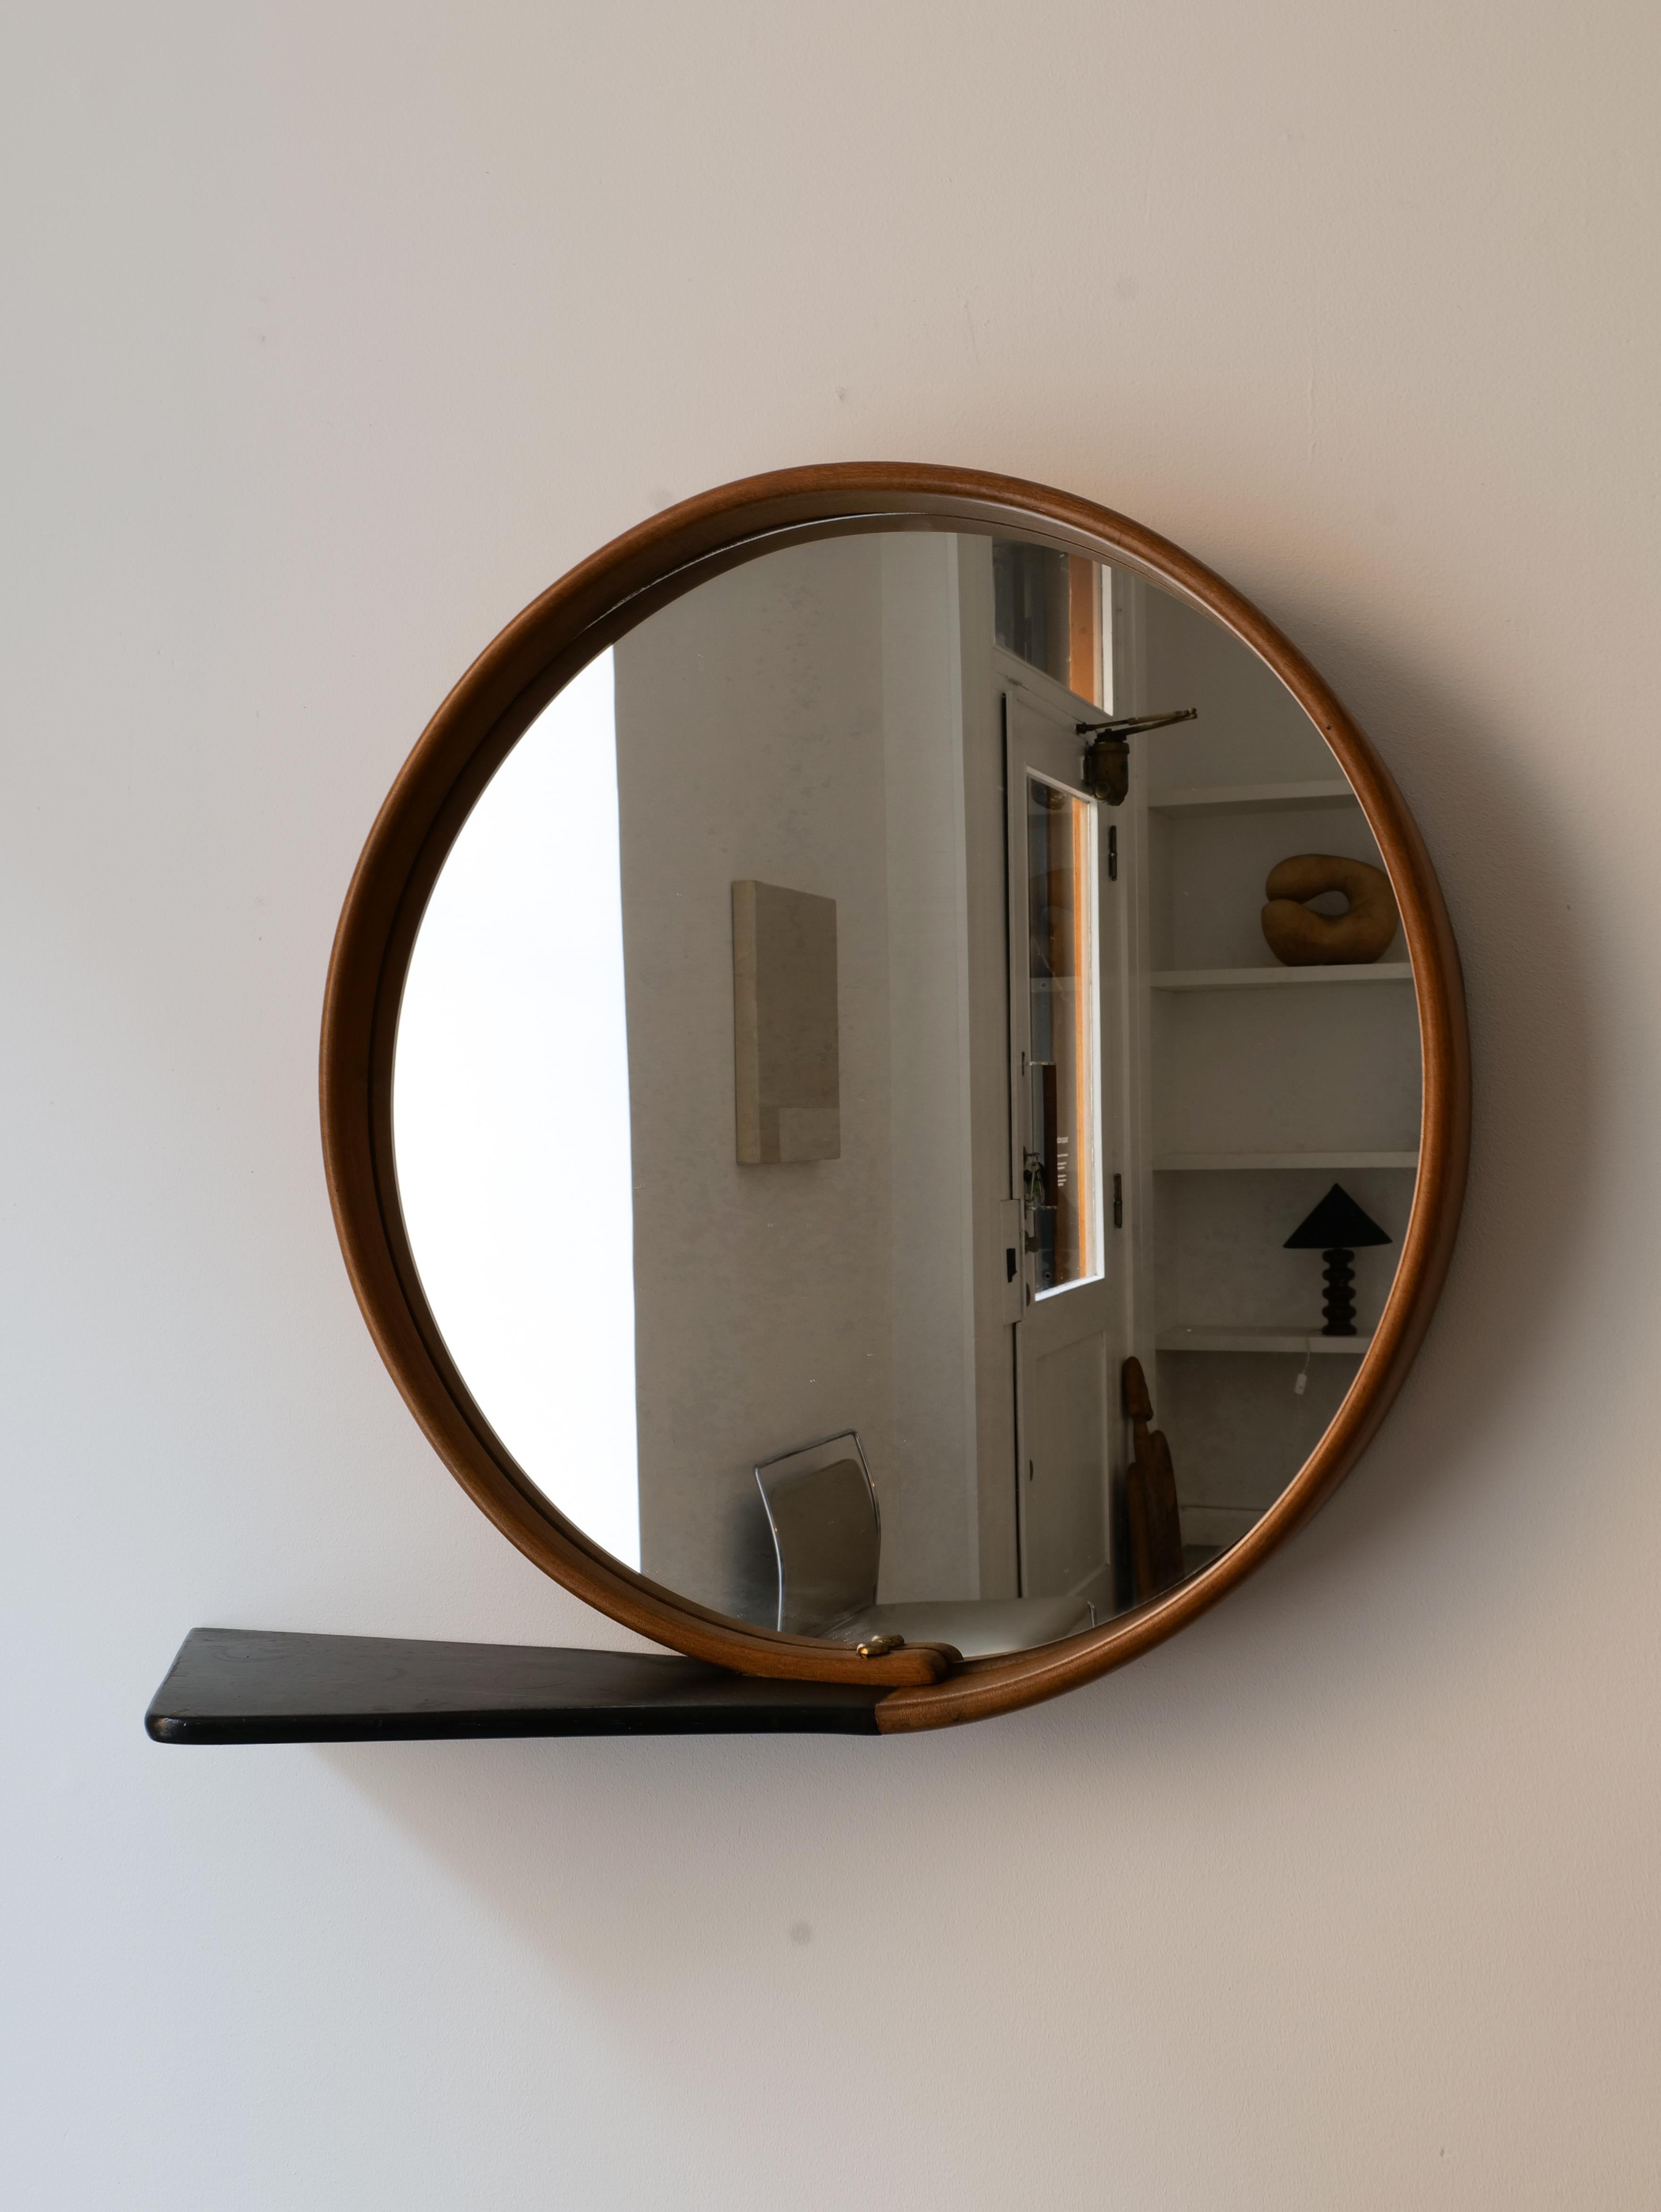 Miroir circulaire suédois moderne de belle facture, formé d'une seule boucle de bois tout autour du miroir. Des goujons en laiton maintiennent la boucle en place avec une pièce allongée qui fait office de petite étagère de vanité.  en noir